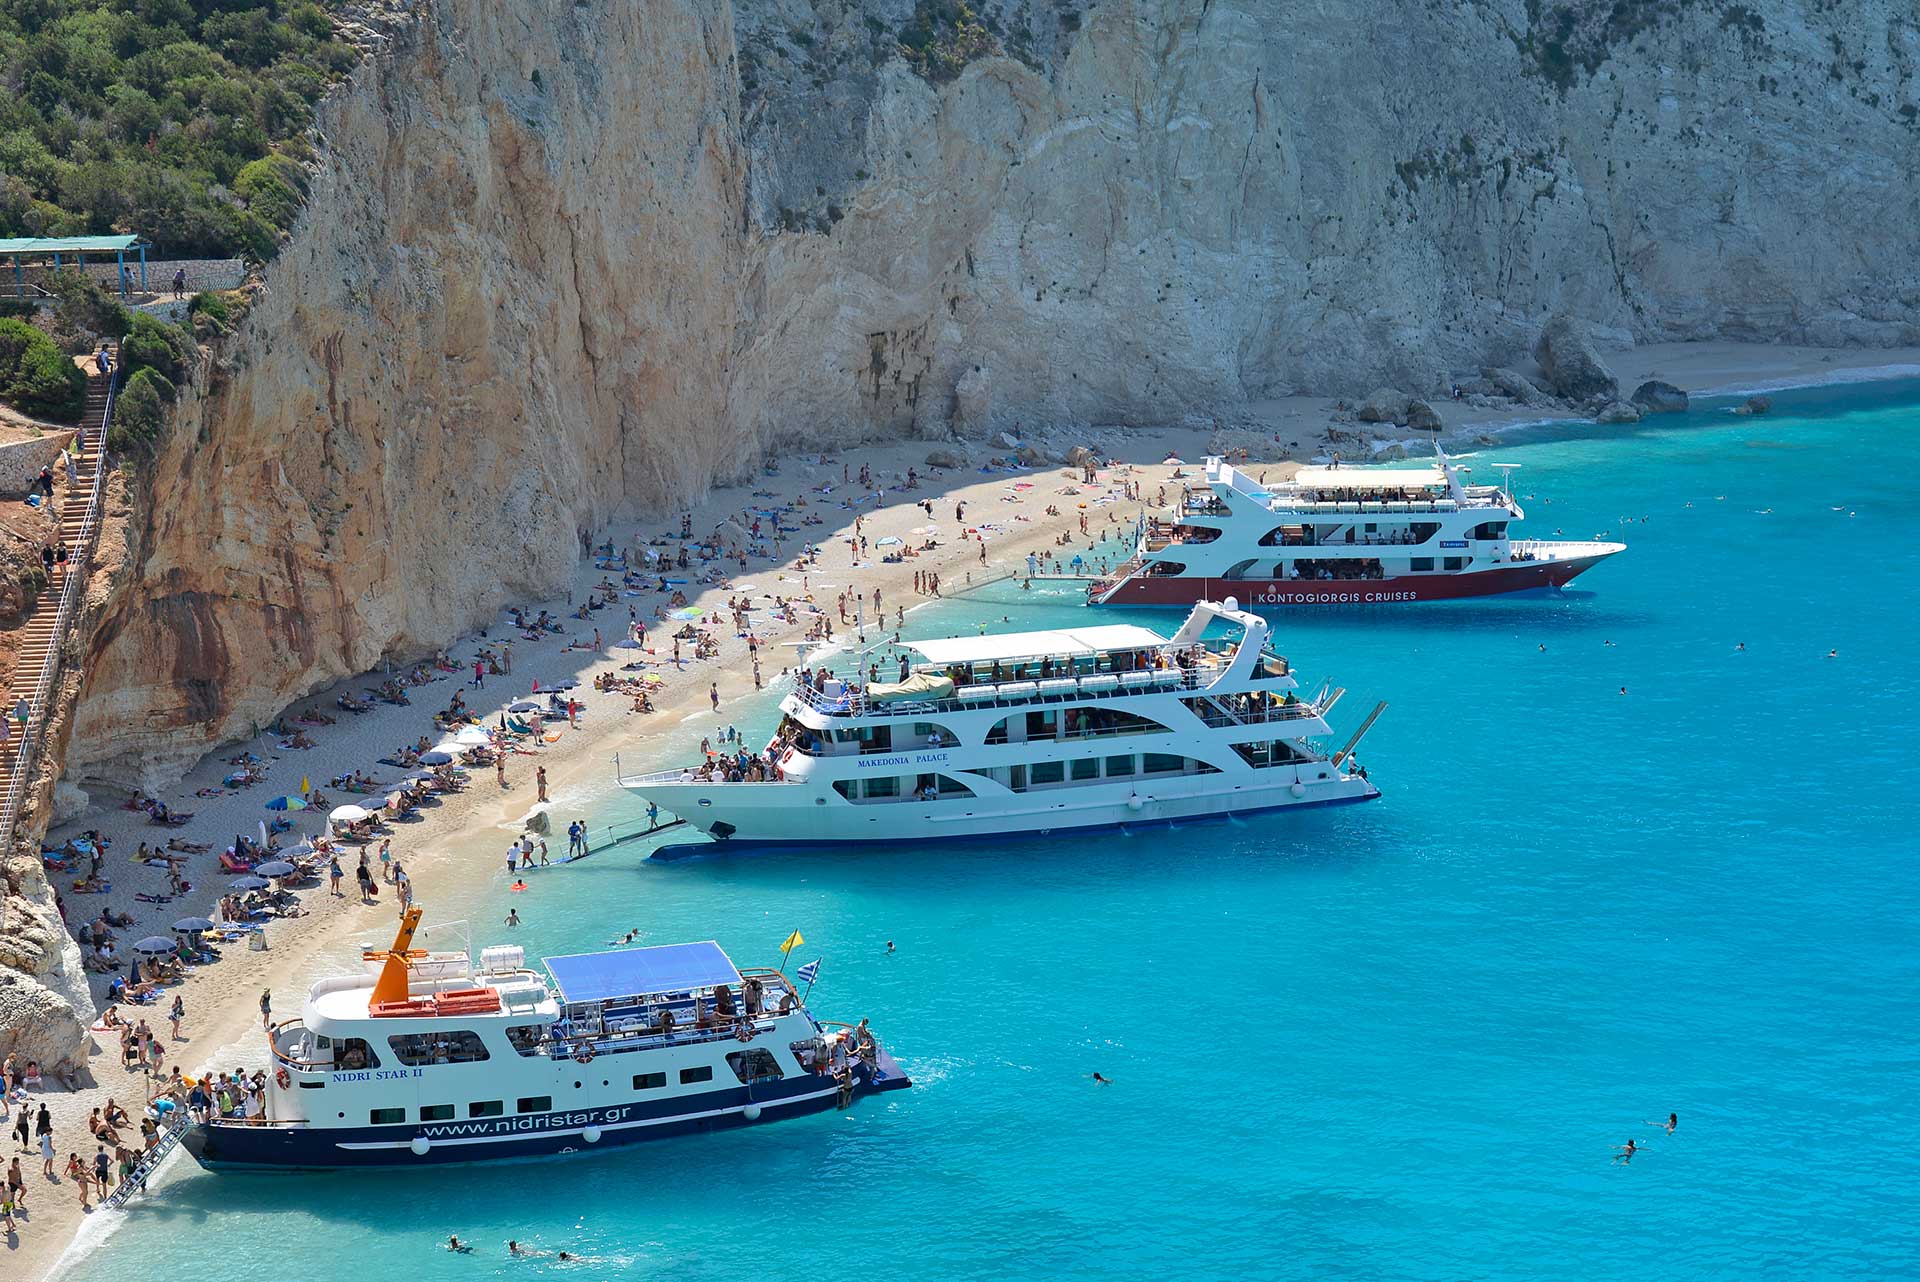 Ταξιδέψτε στις μαγευτικές παραλίες της Λευκάδας μέσα από ένα βίντεο!